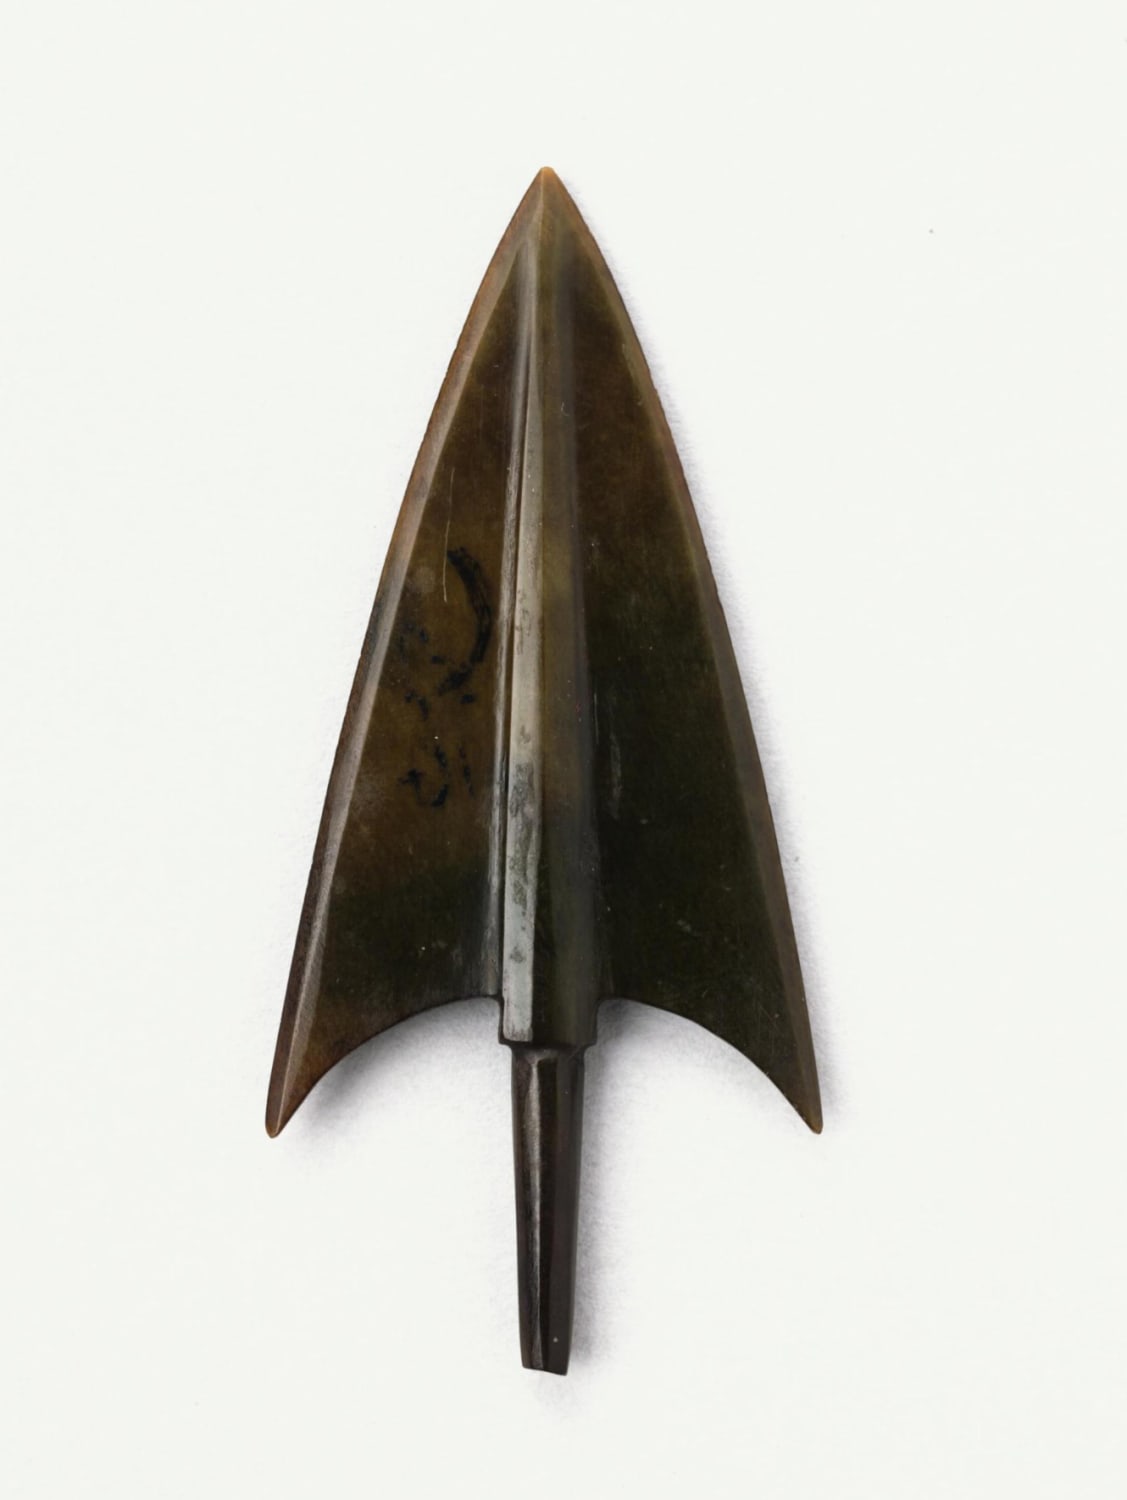 Jade arrowhead talisman. China, Shang dynasty, ~1200 BC